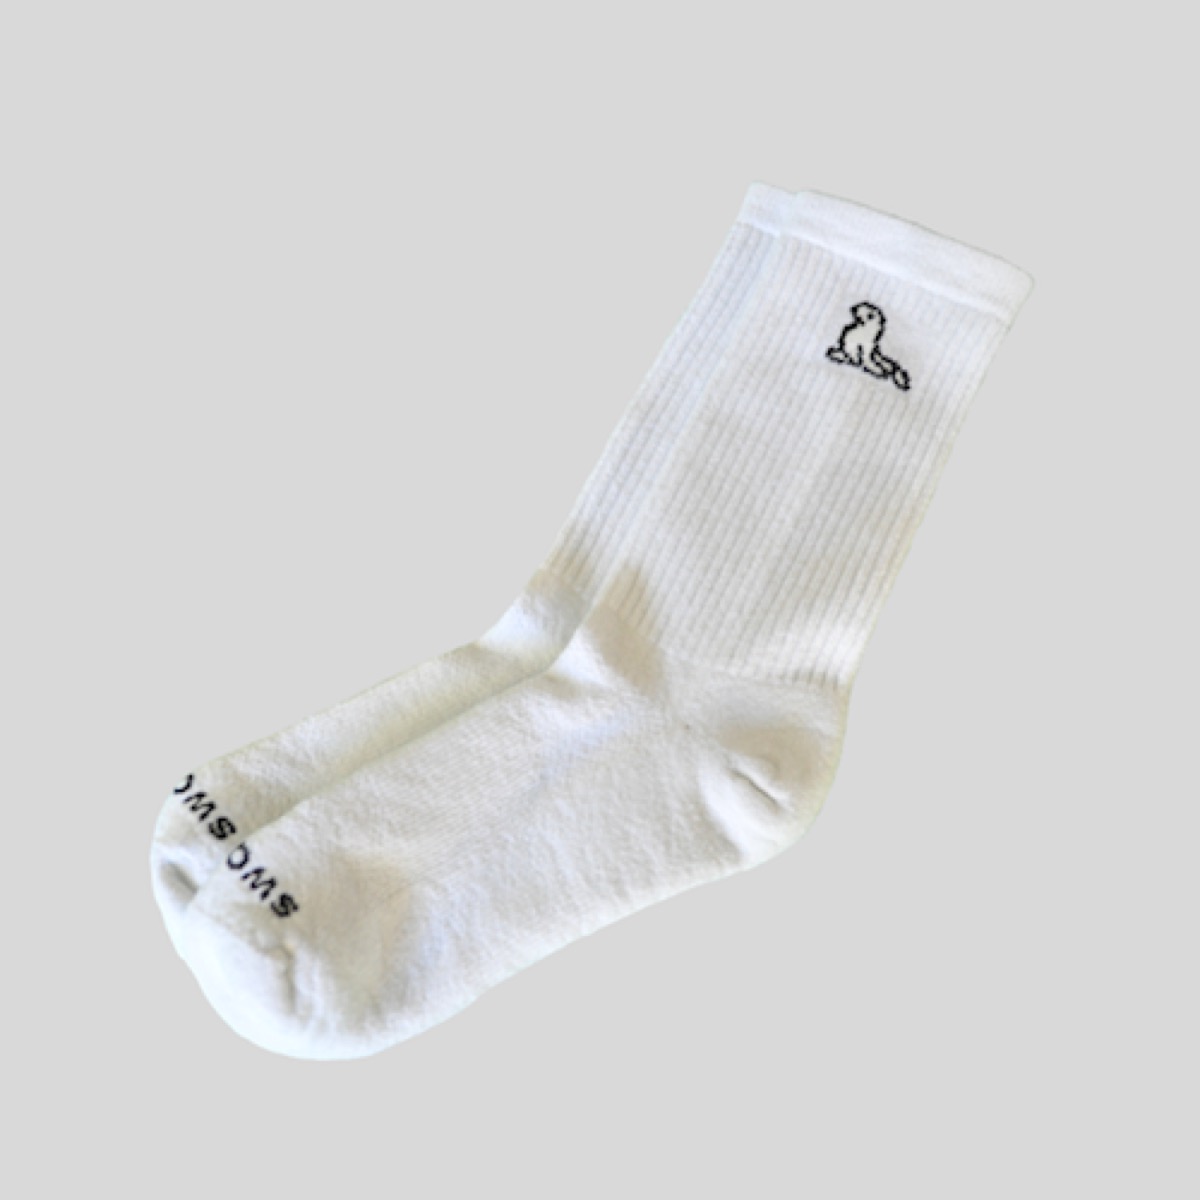 white athletic socks